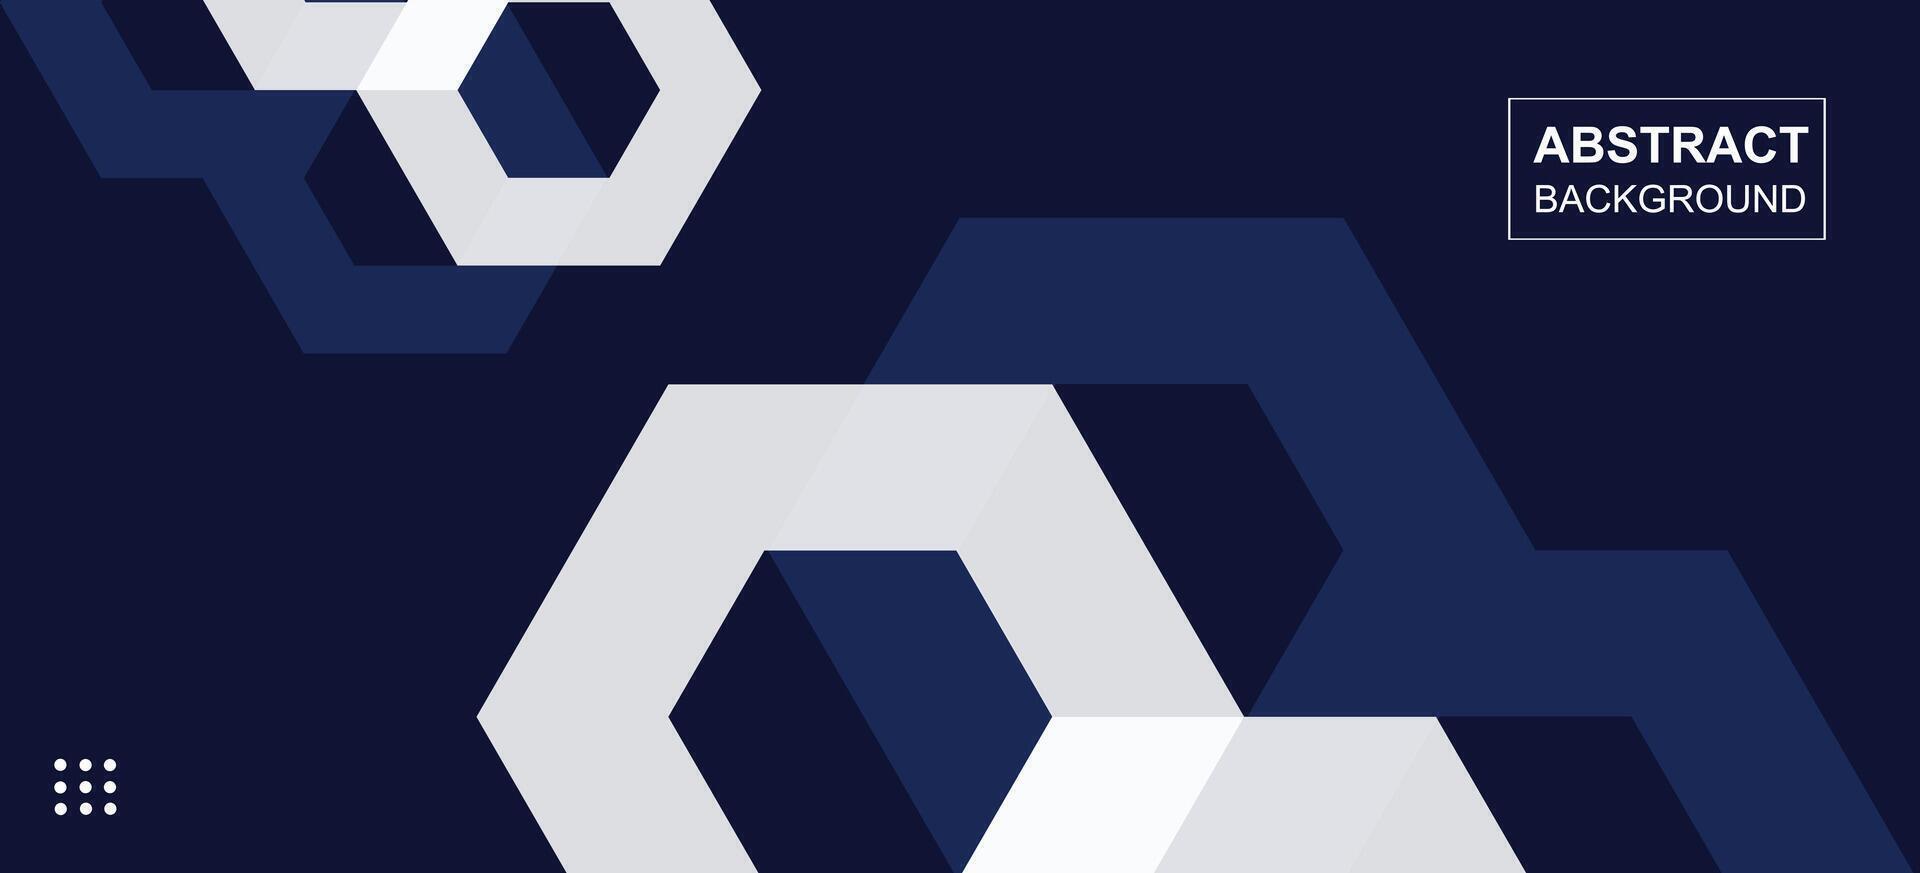 modern abstrakt Blau Weiß Hexagon gestalten Konzept Geschäft Hintergrund Design. Vektor Illustration